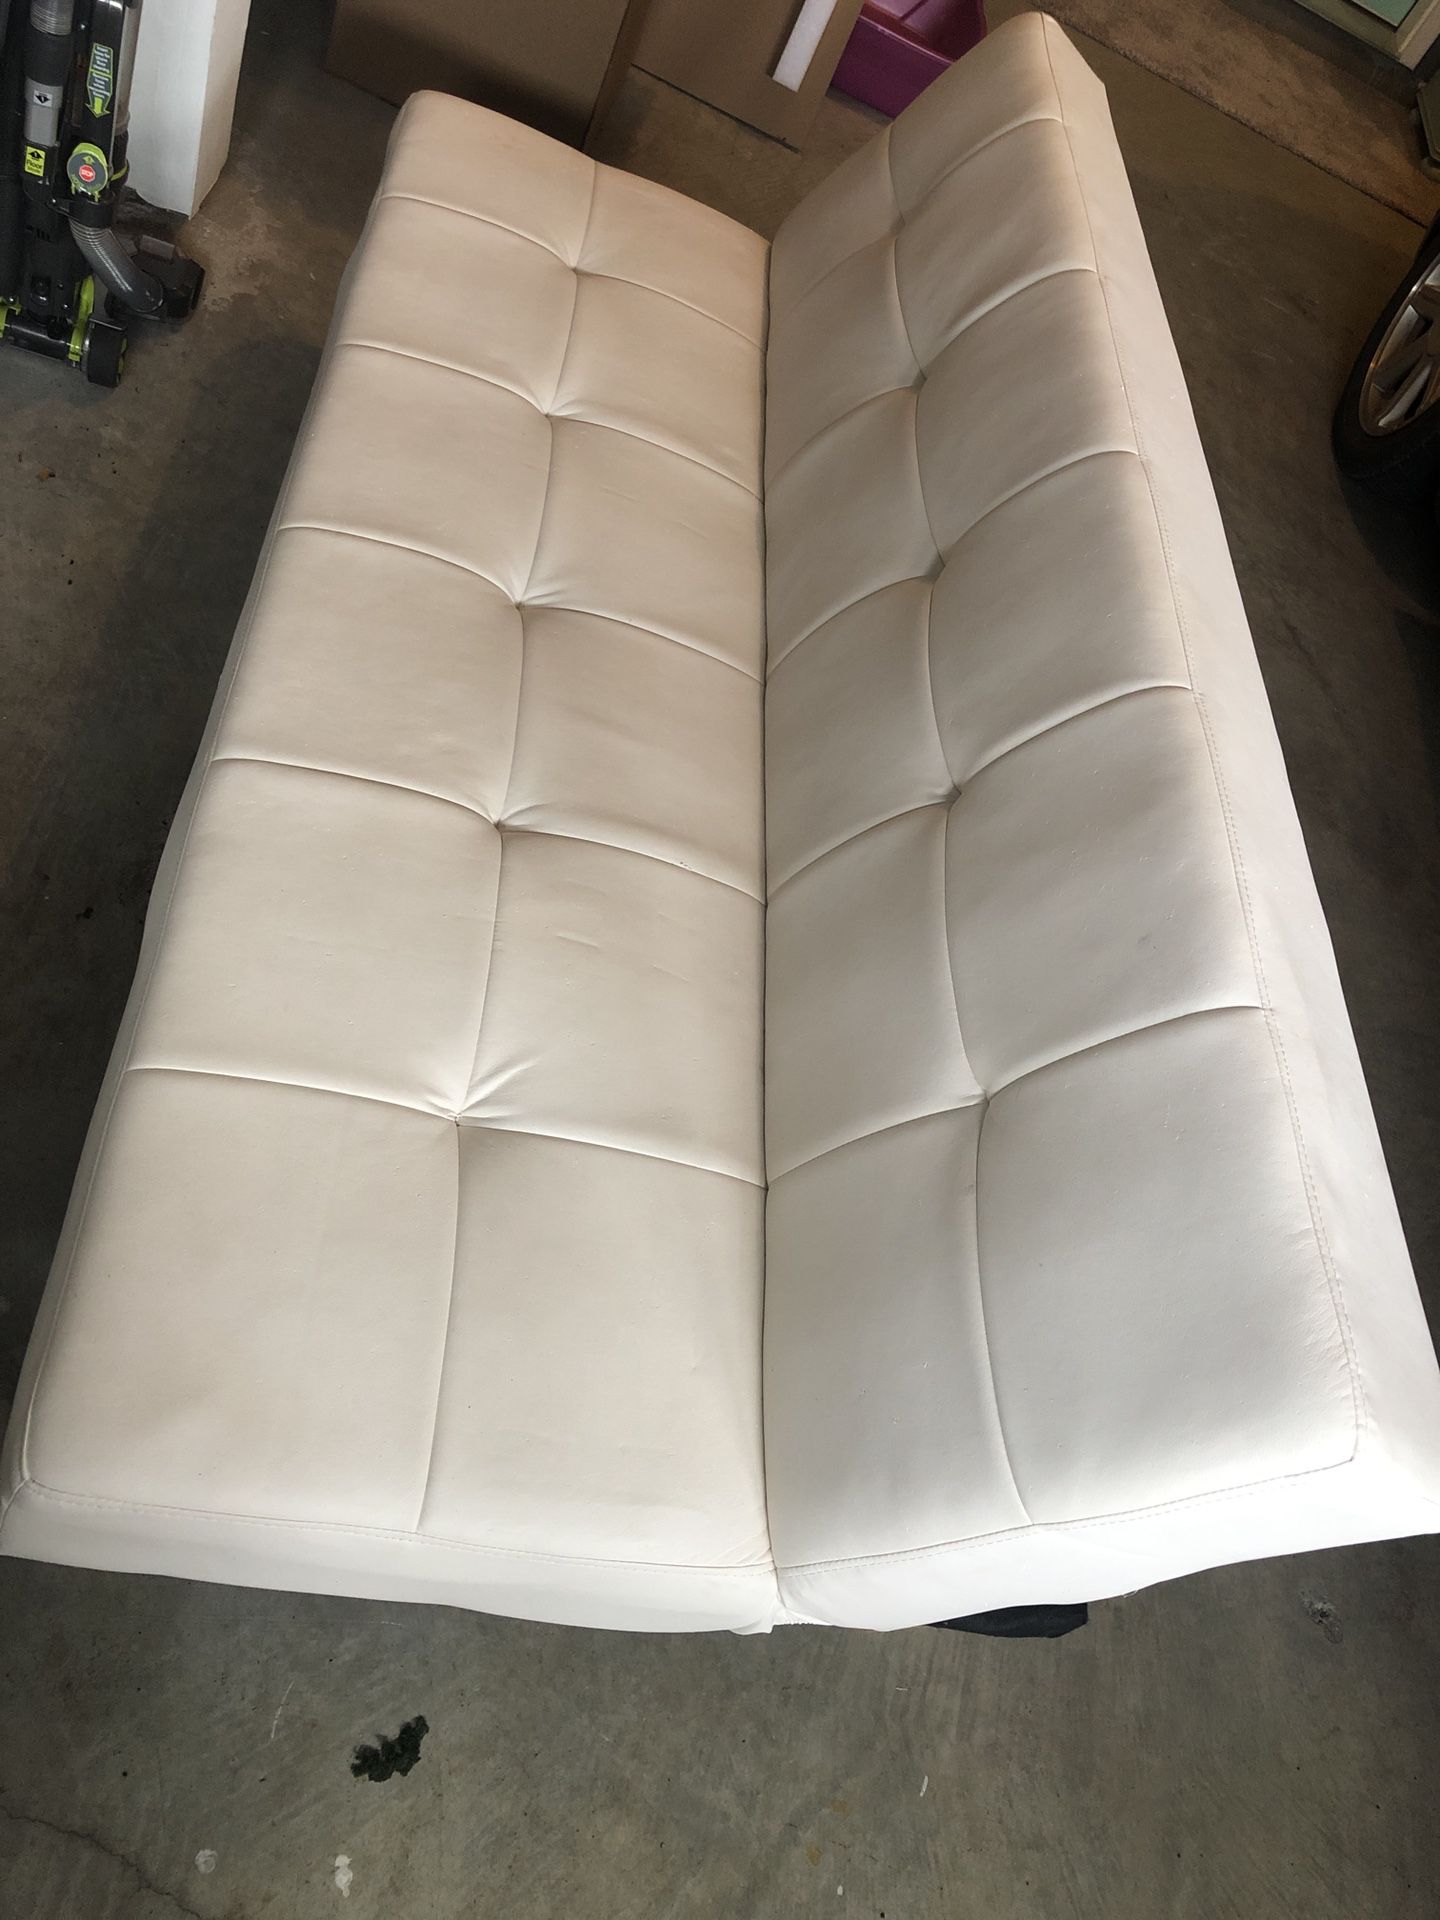 white futon